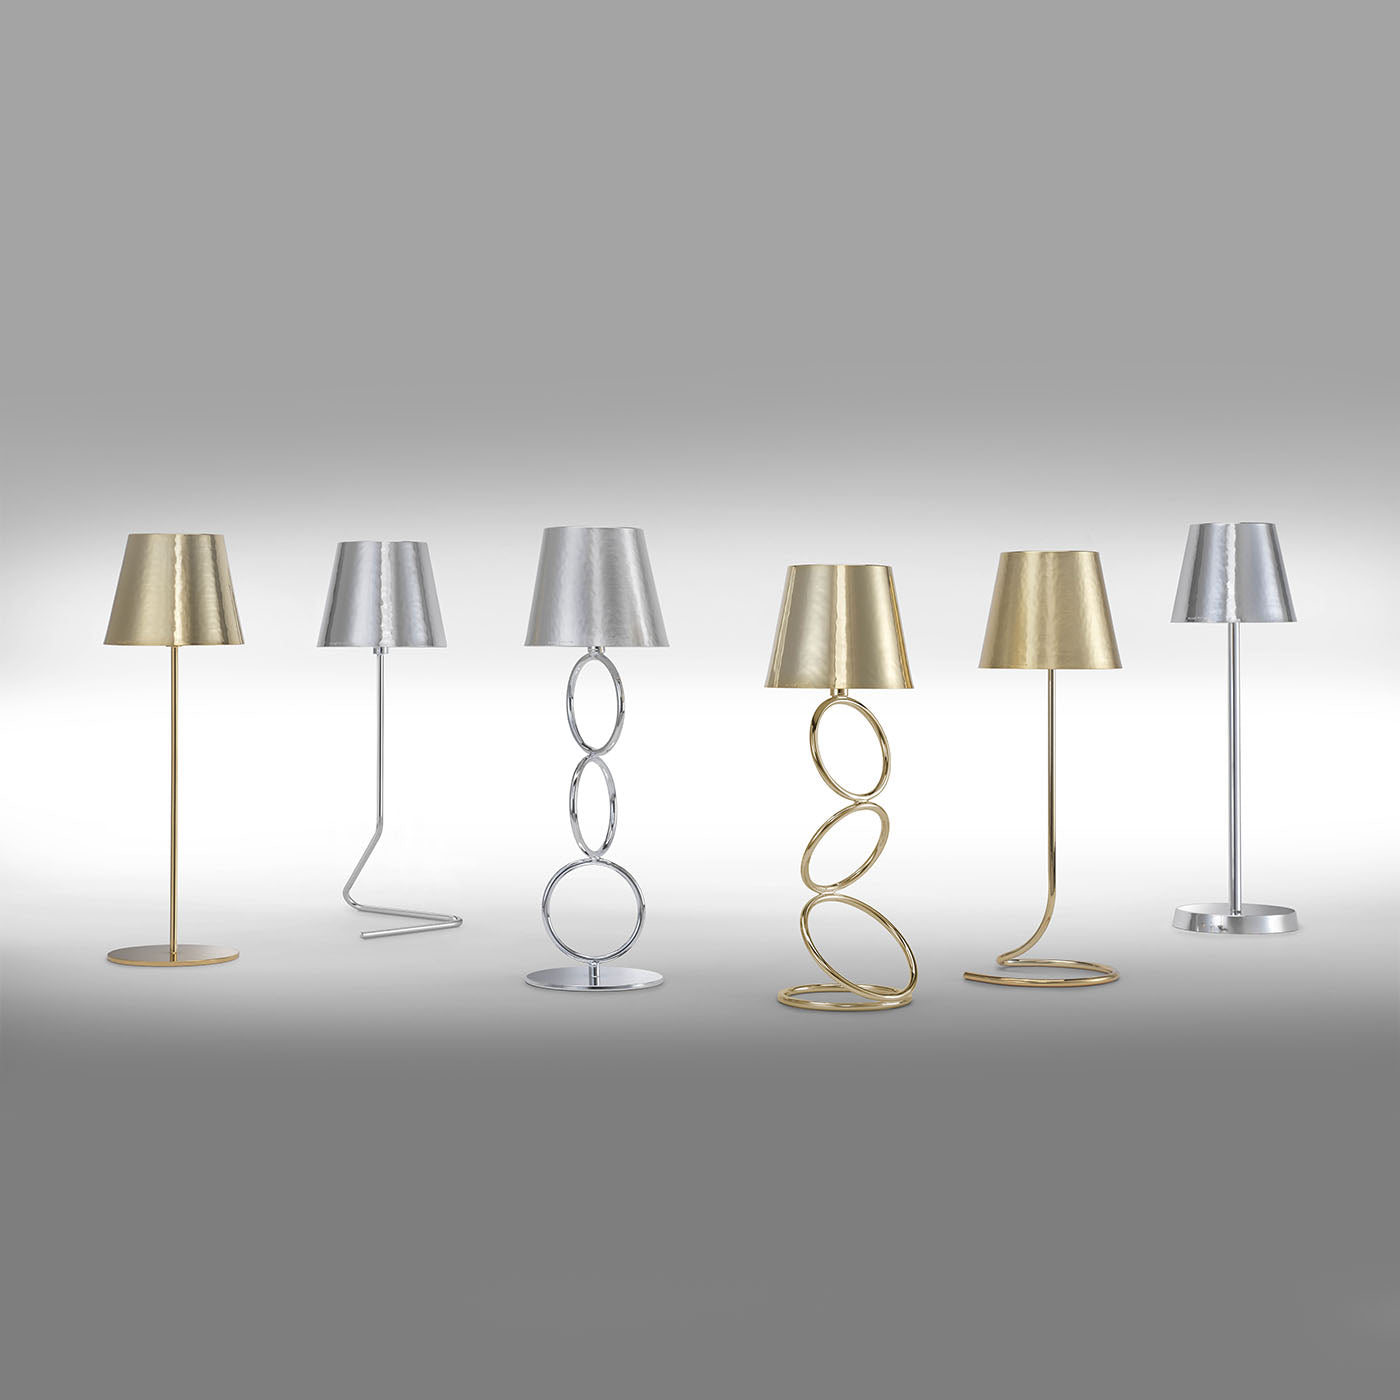 Golden Lamp #1 by Itamar Harari - Alternative view 2